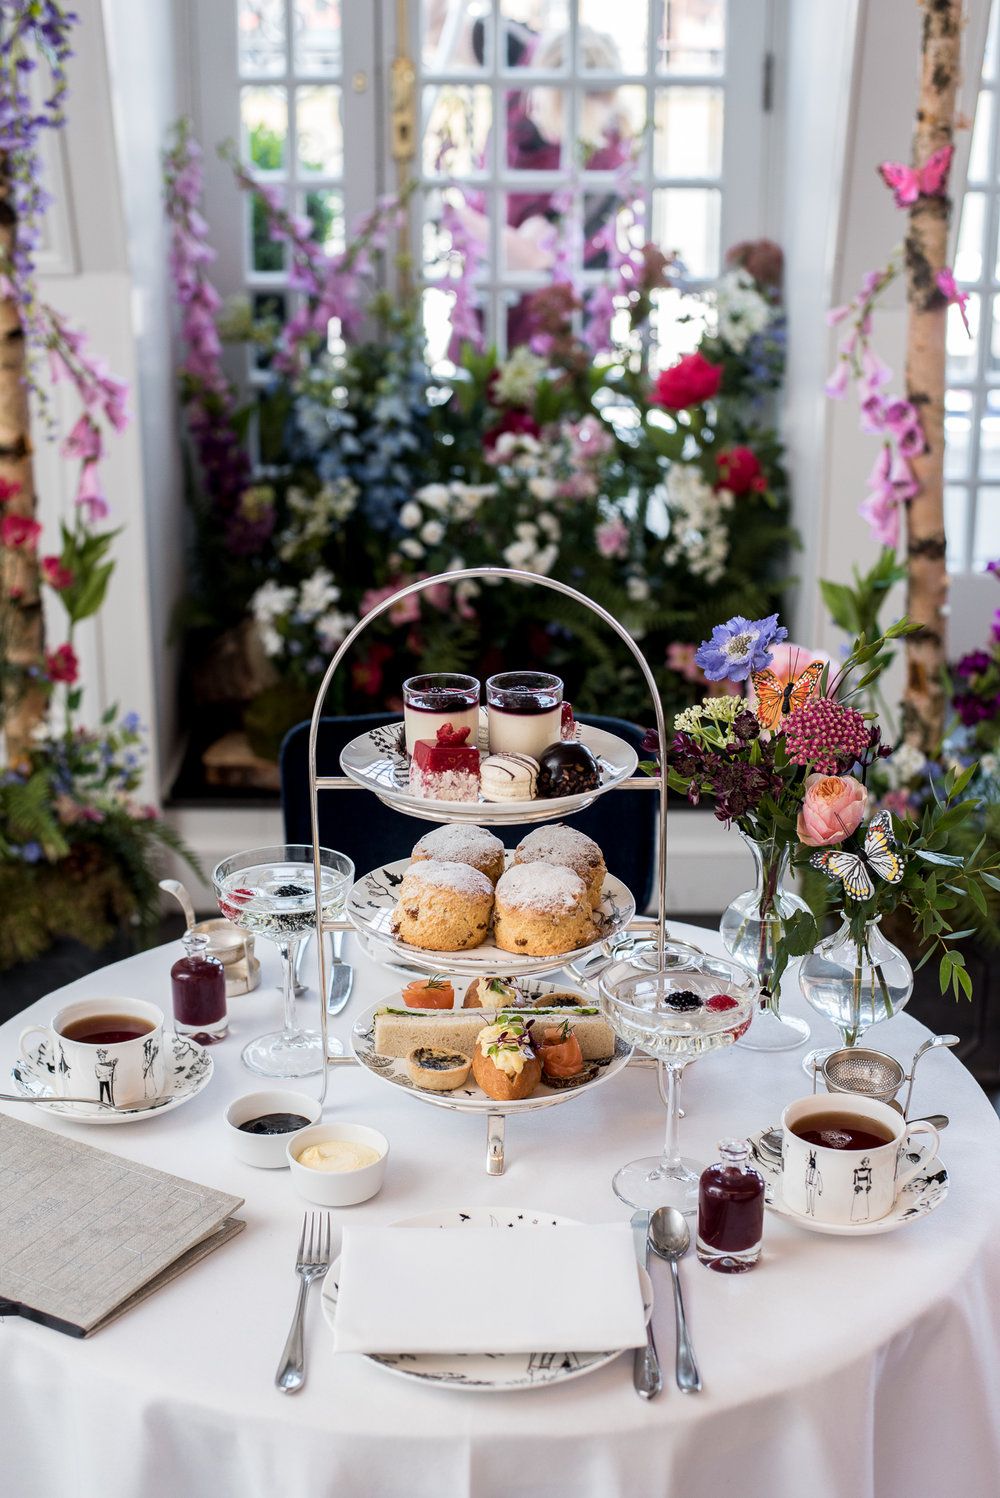 Tiệc trà kiểu Anh là một nét văn hóa ẩm thực đặc trưng của xứ sở sương mù.